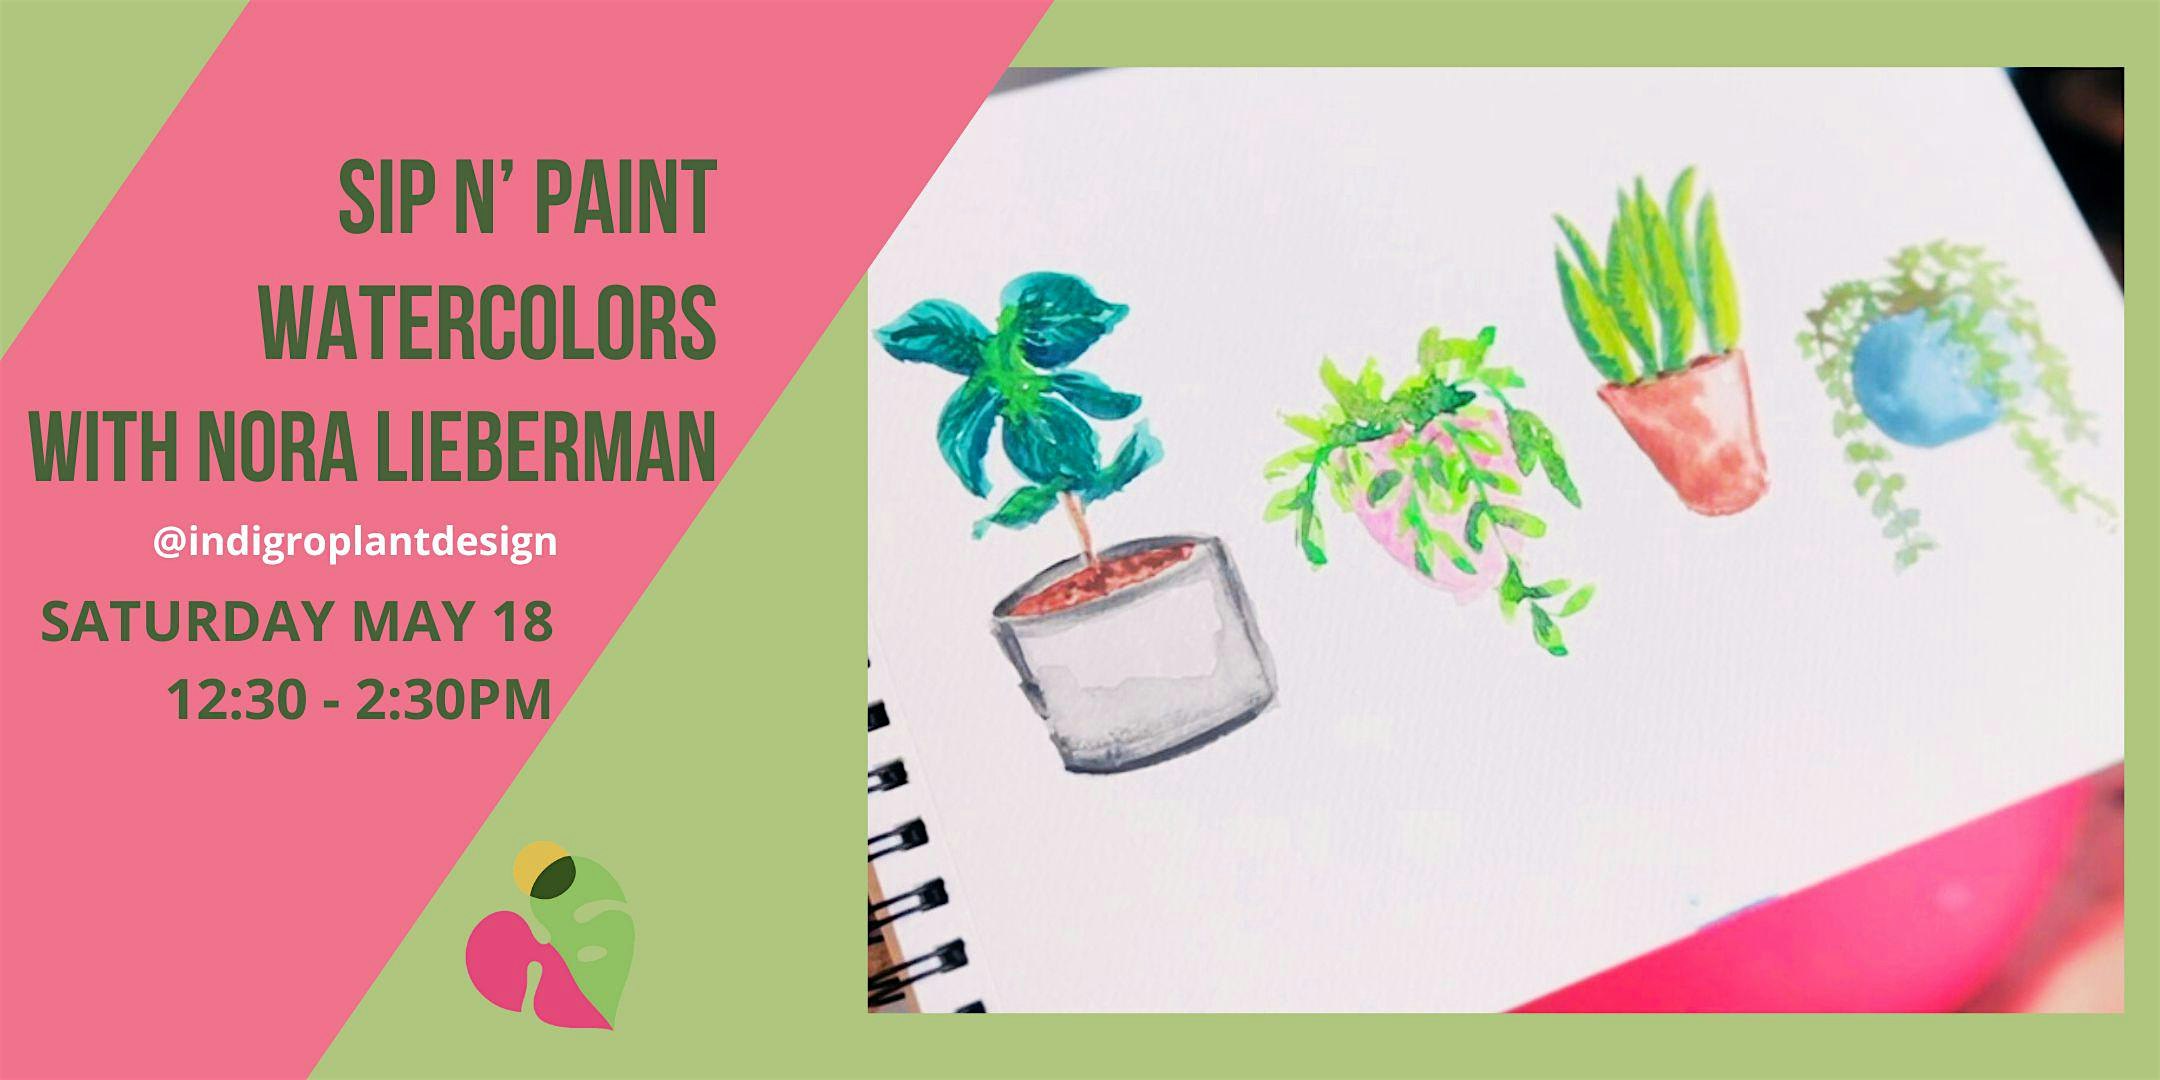 Sip n' Paint - Watercolors with Nora Lieberman